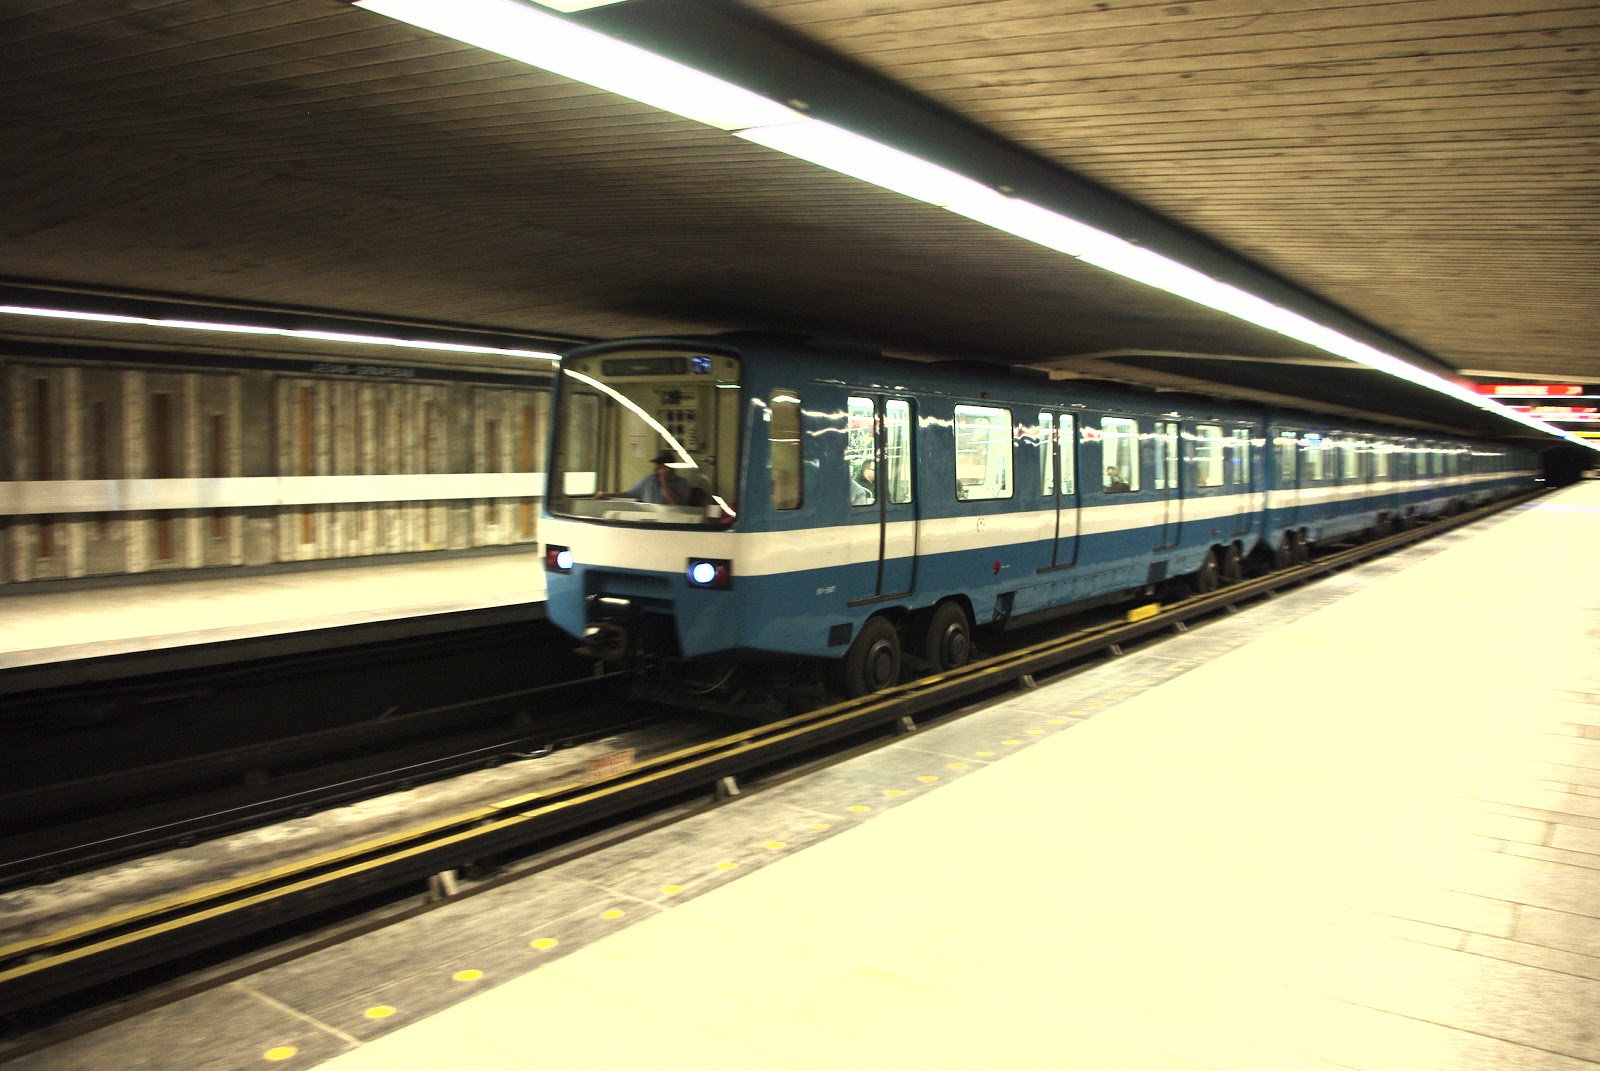 Résultat de recherche d'images pour "métro pneumatique"